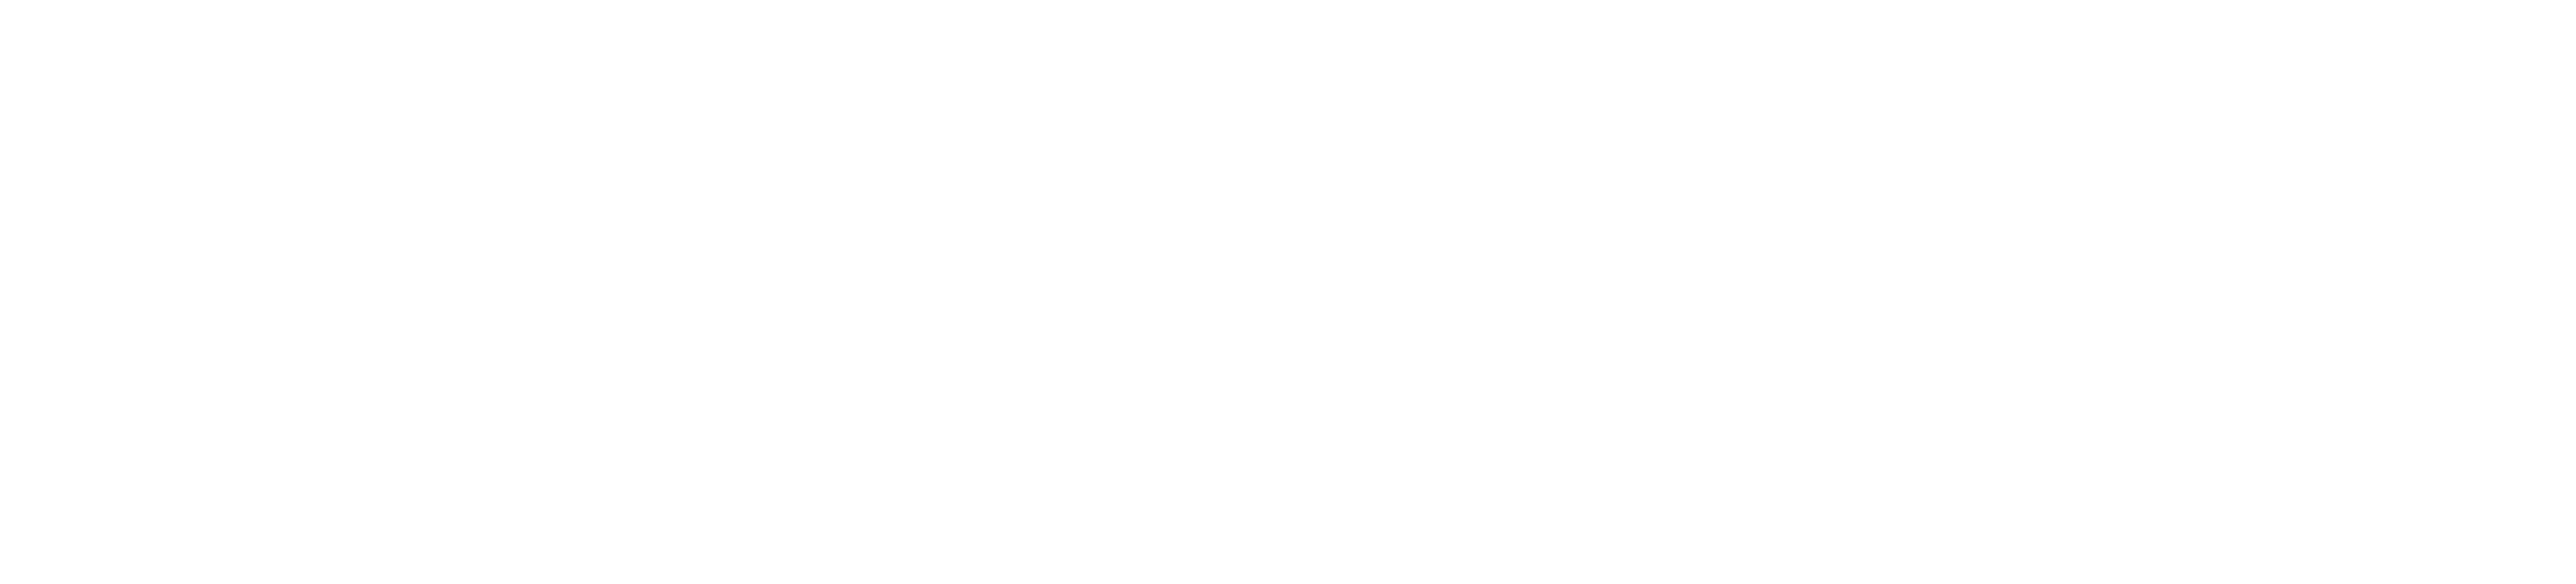 Davis-Moore Mazda Wichita, KS